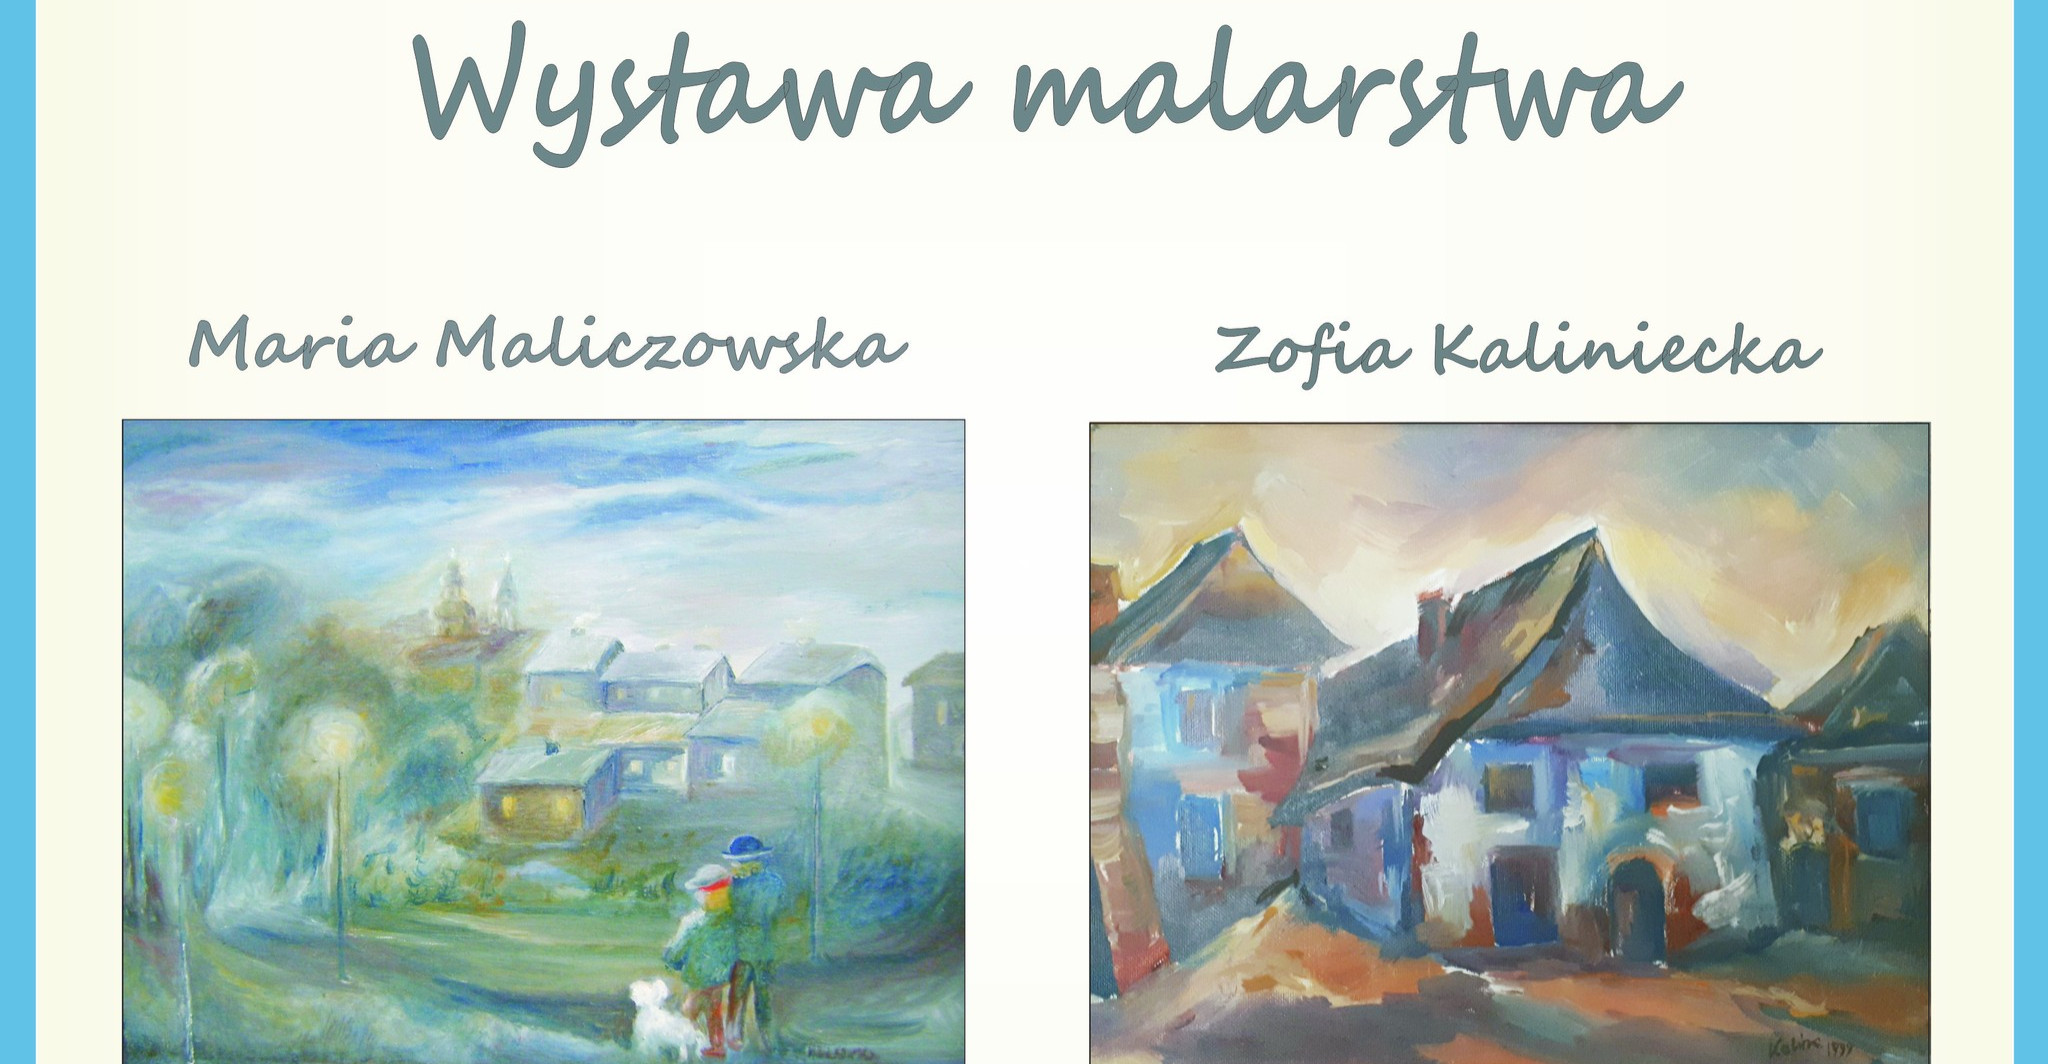 SANOK: Wystawa malarstwa Marii Maliczowskiej i Zofii Kalinieckiej